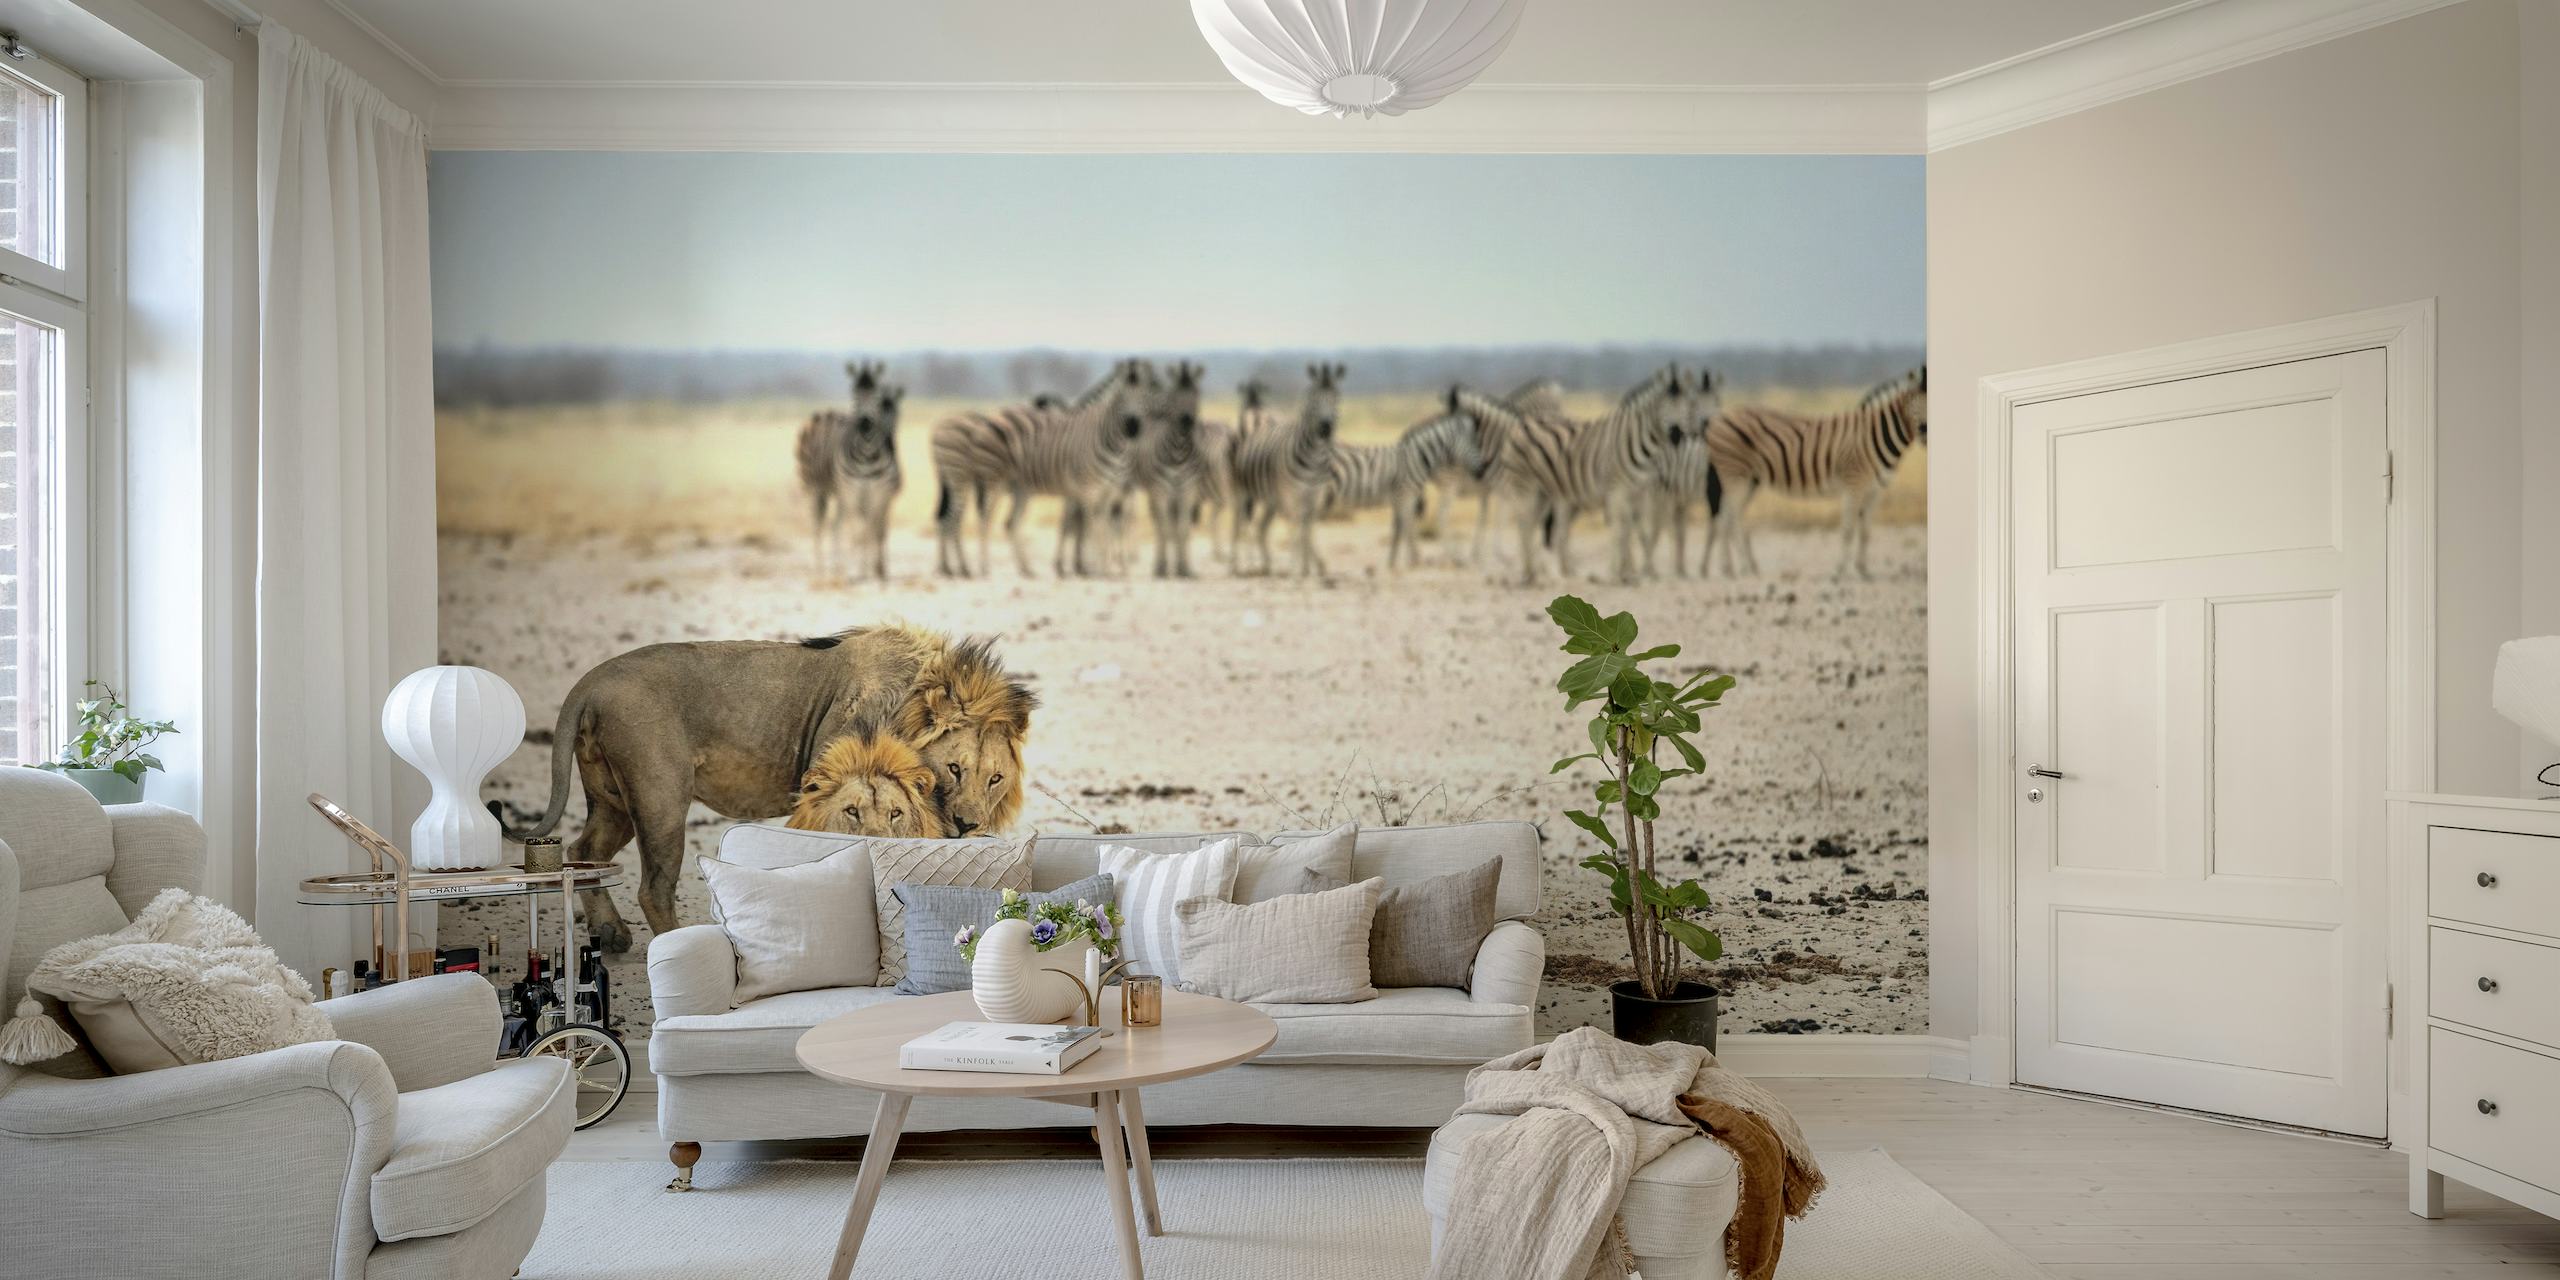 Leeuw en zebra's in een muurschildering in de Afrikaanse savanne